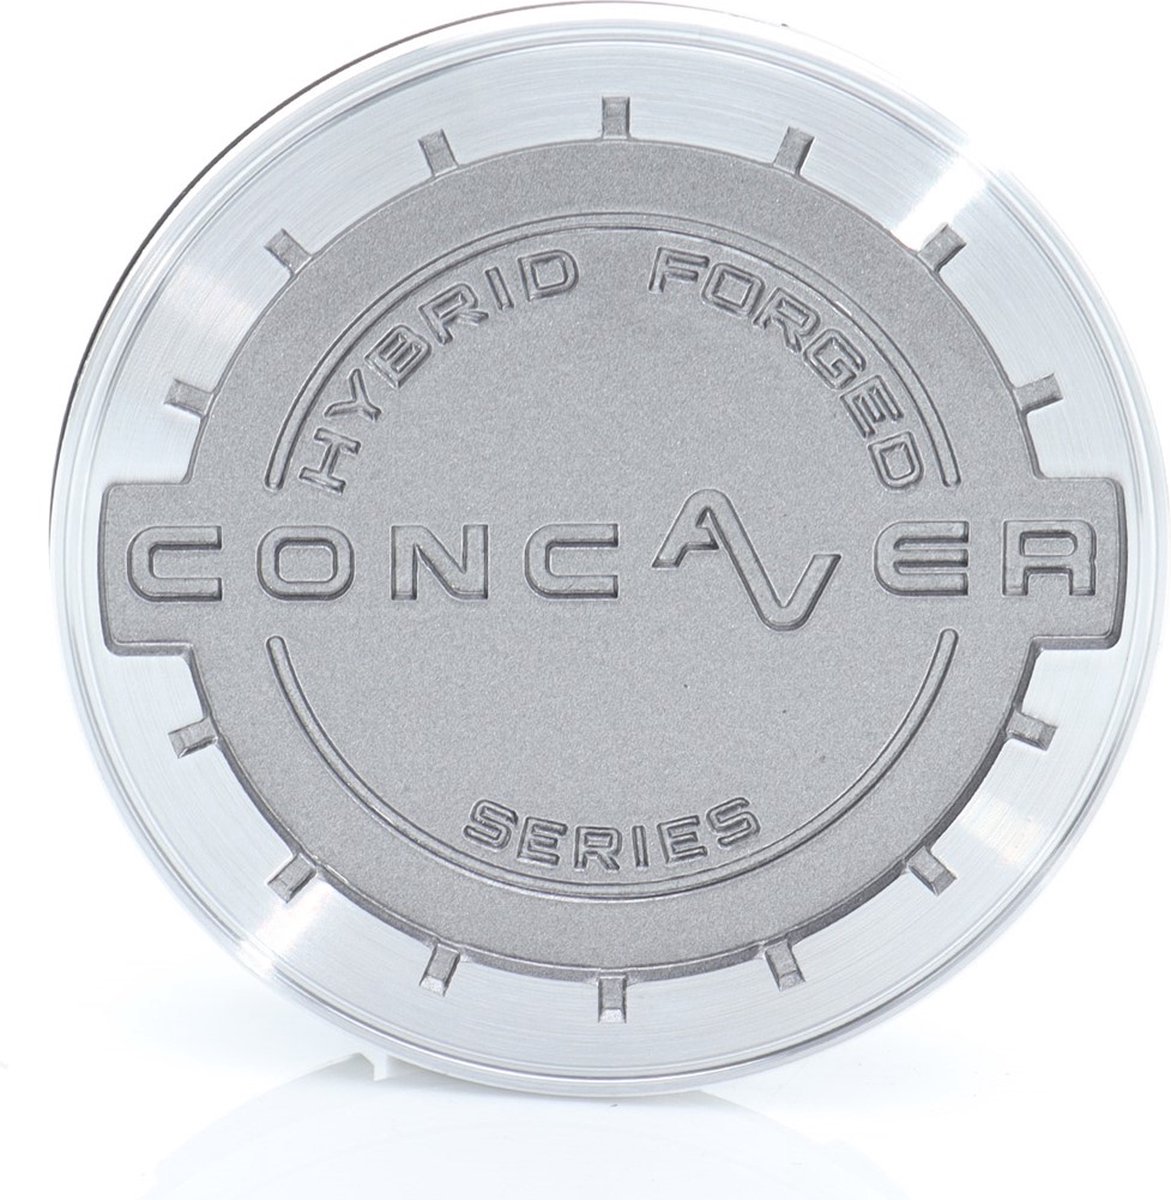 Center cap Concaver wheels CVR brushed titanium